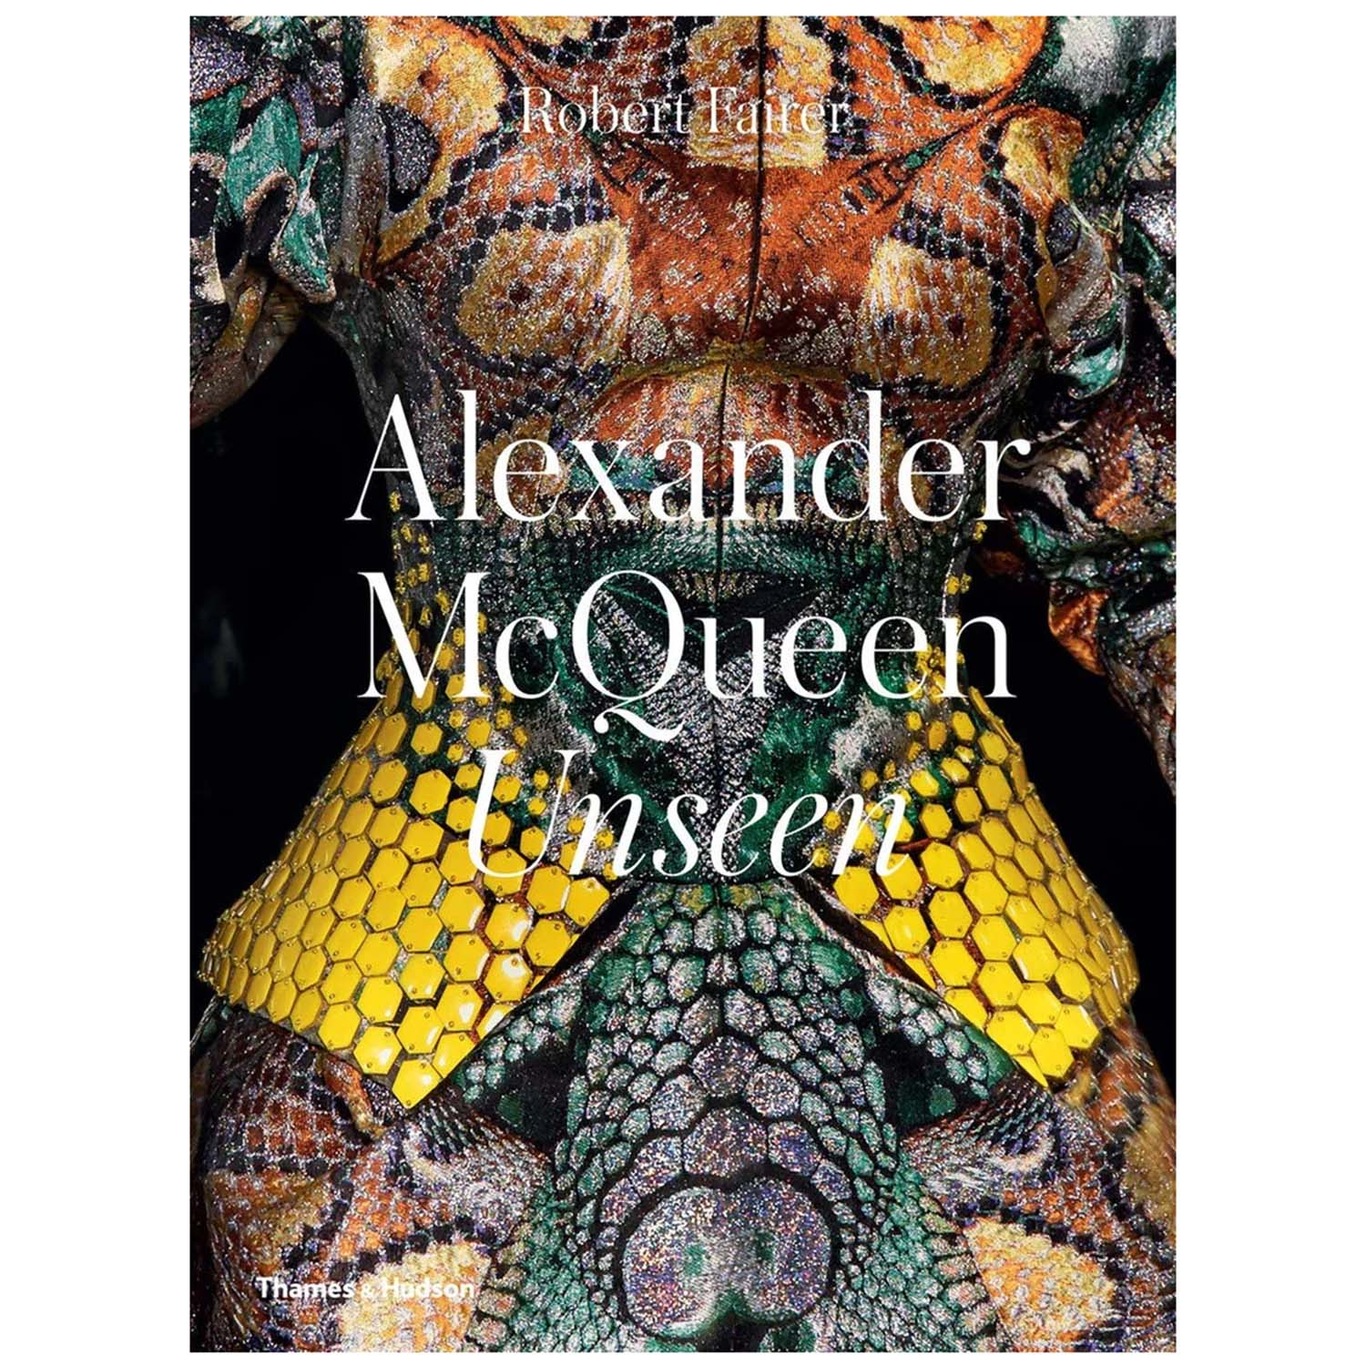 Alexander Mcqueen: Unseen Book